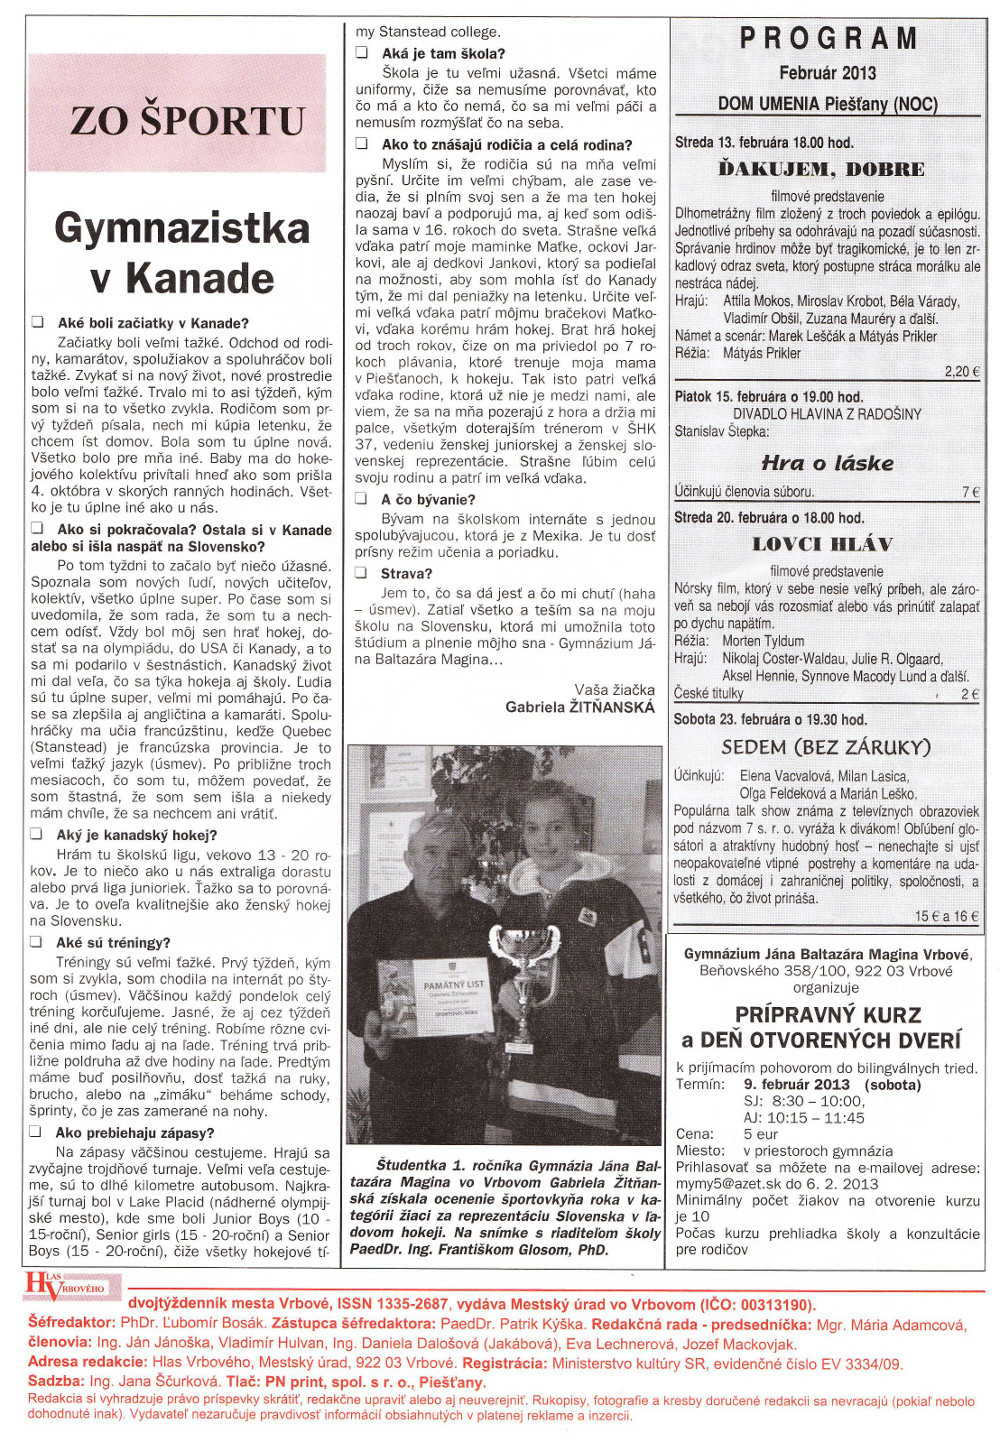 Hlas Vrbového 03/2013, strana 8